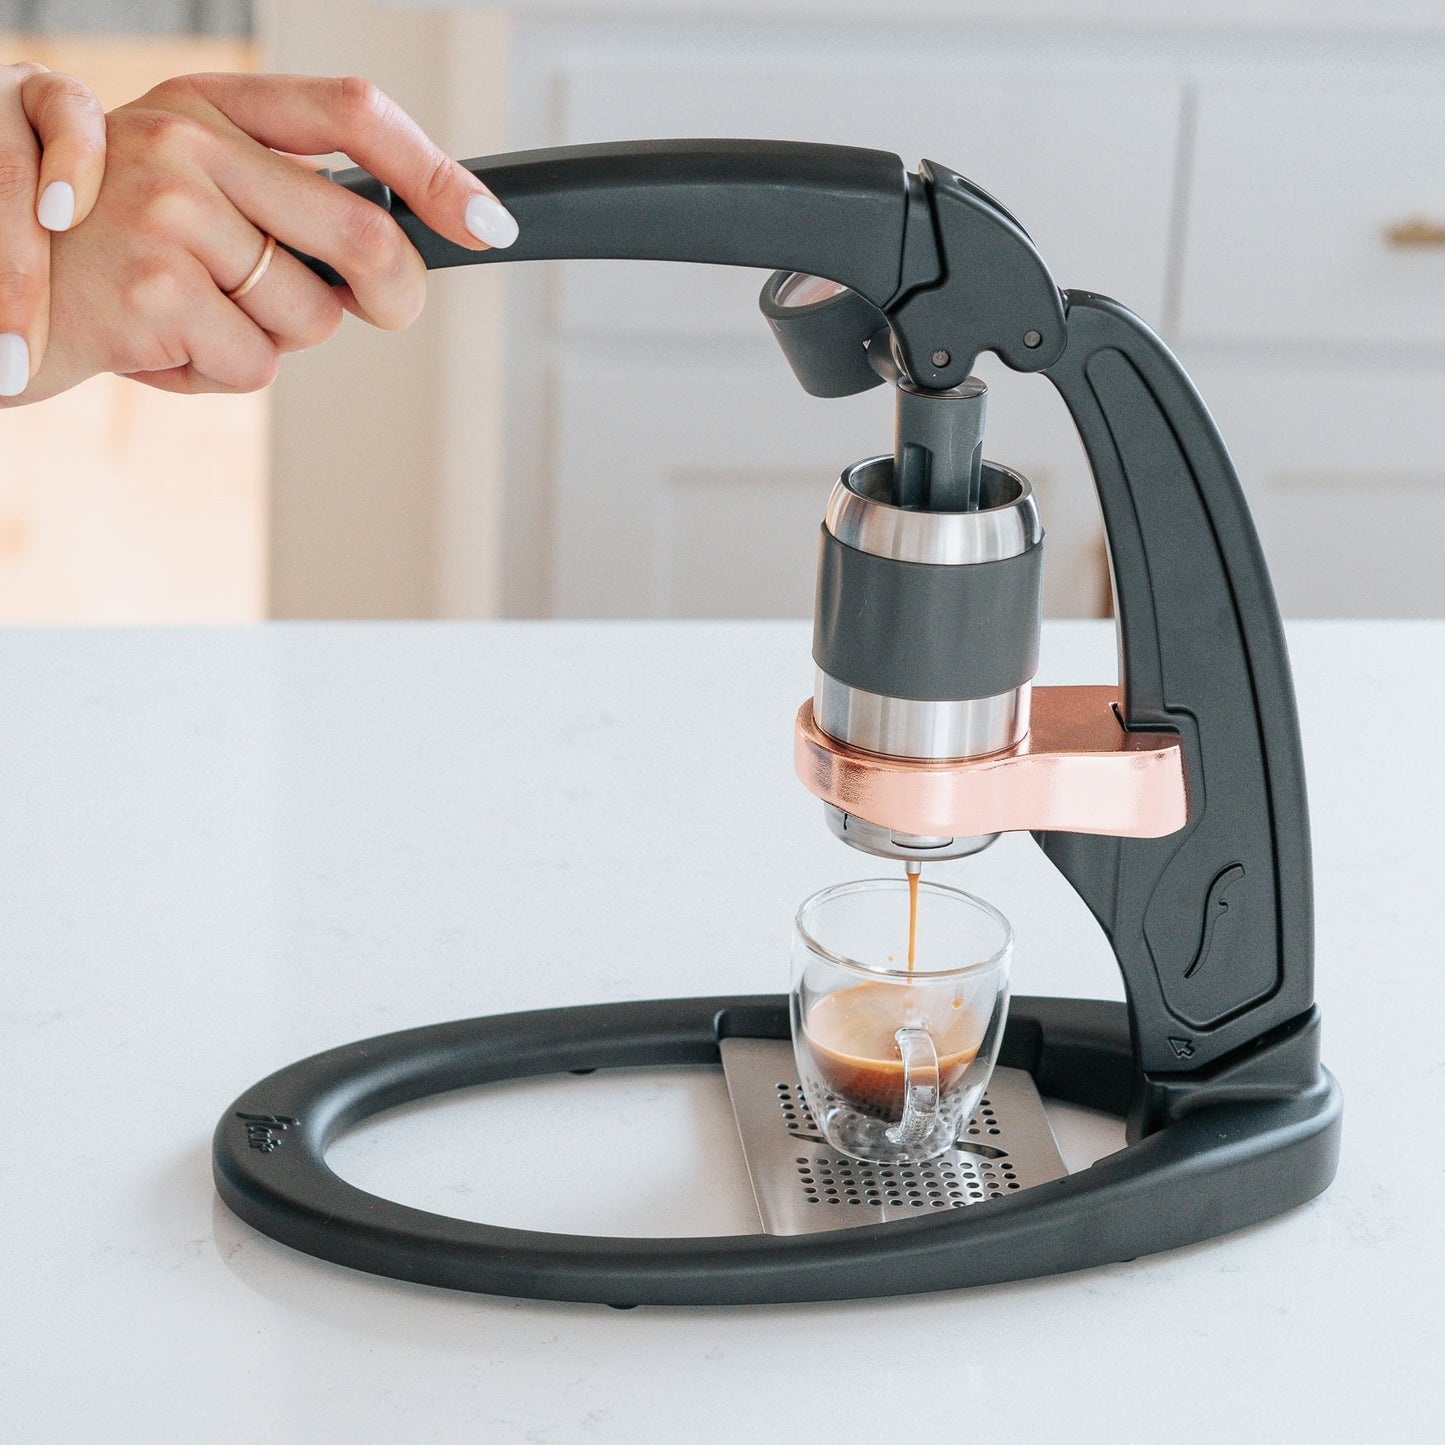 Flair Espresso Pro 2 manual espresso makers